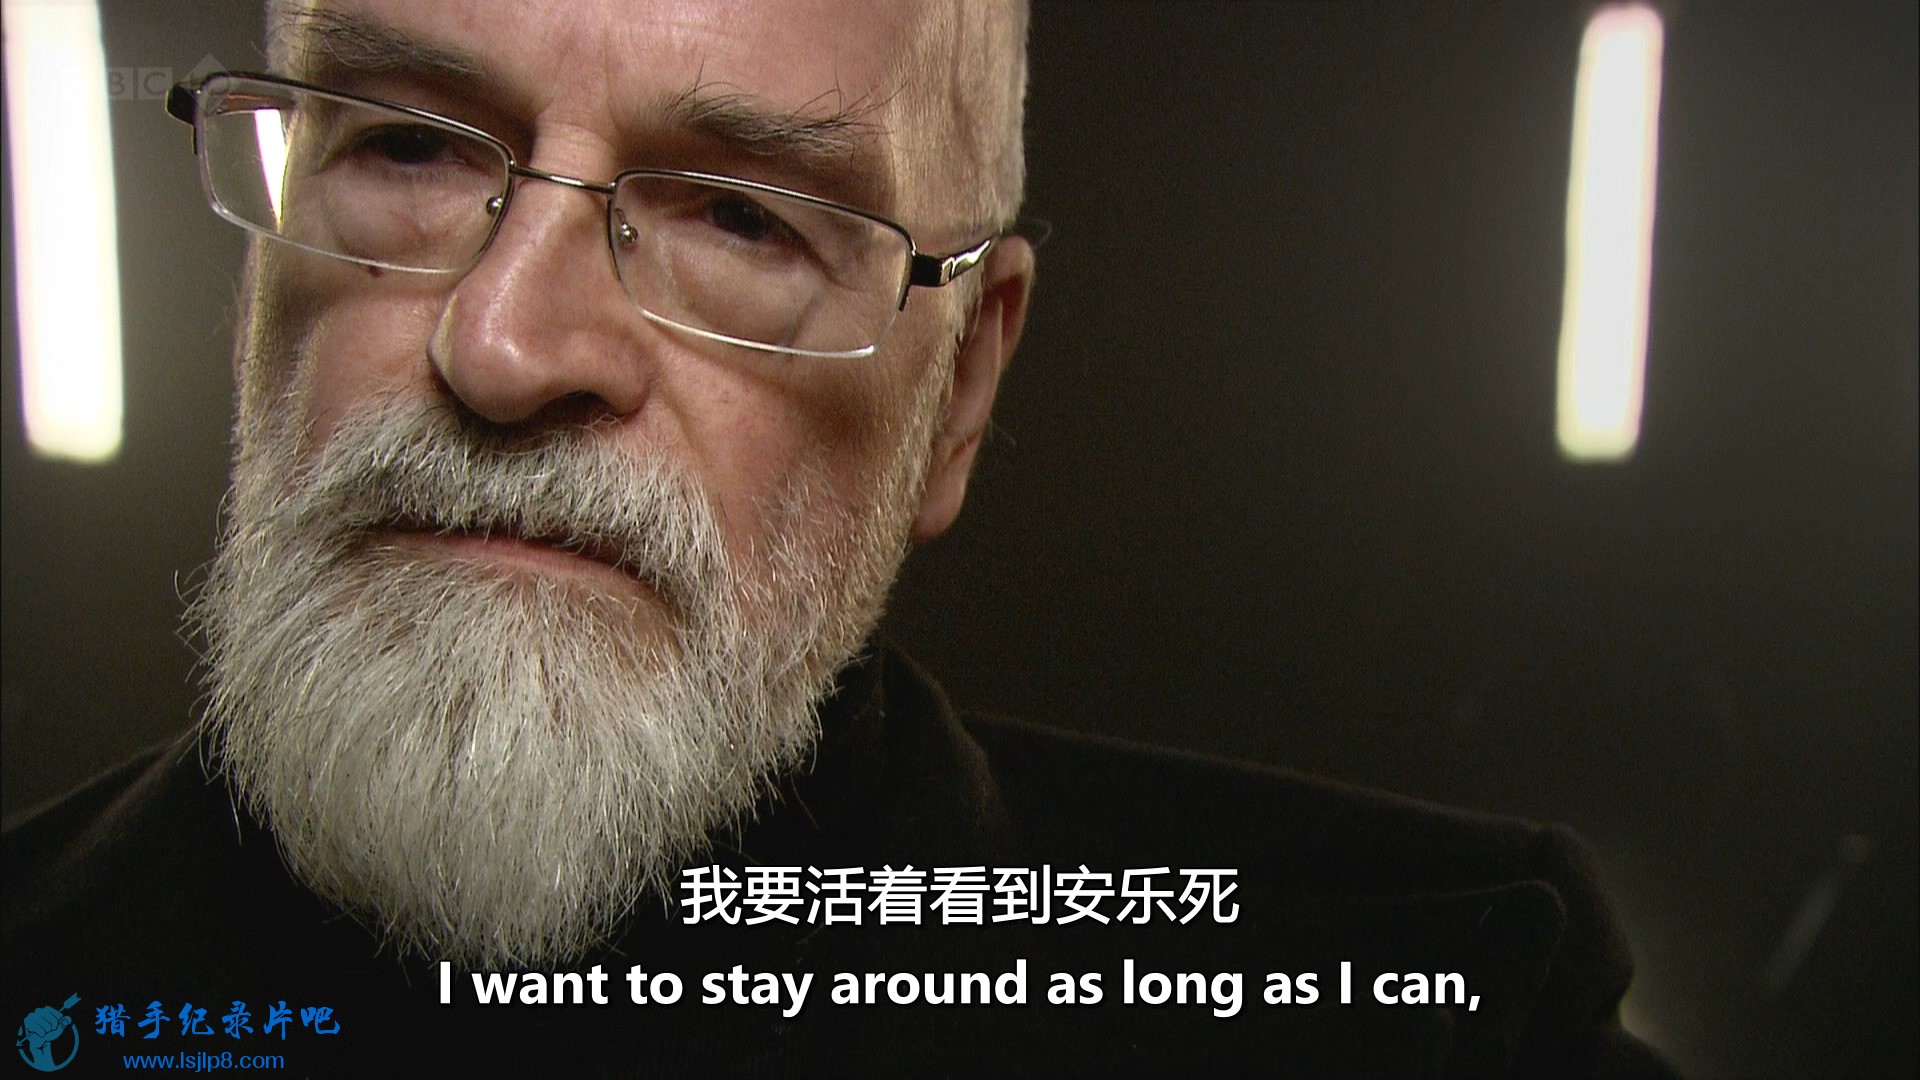 BBC.Terry.Pratchett.Choosing.to.Die.1080i.HDTV.MVGroup.mkv_20190930_091330.804.jpg